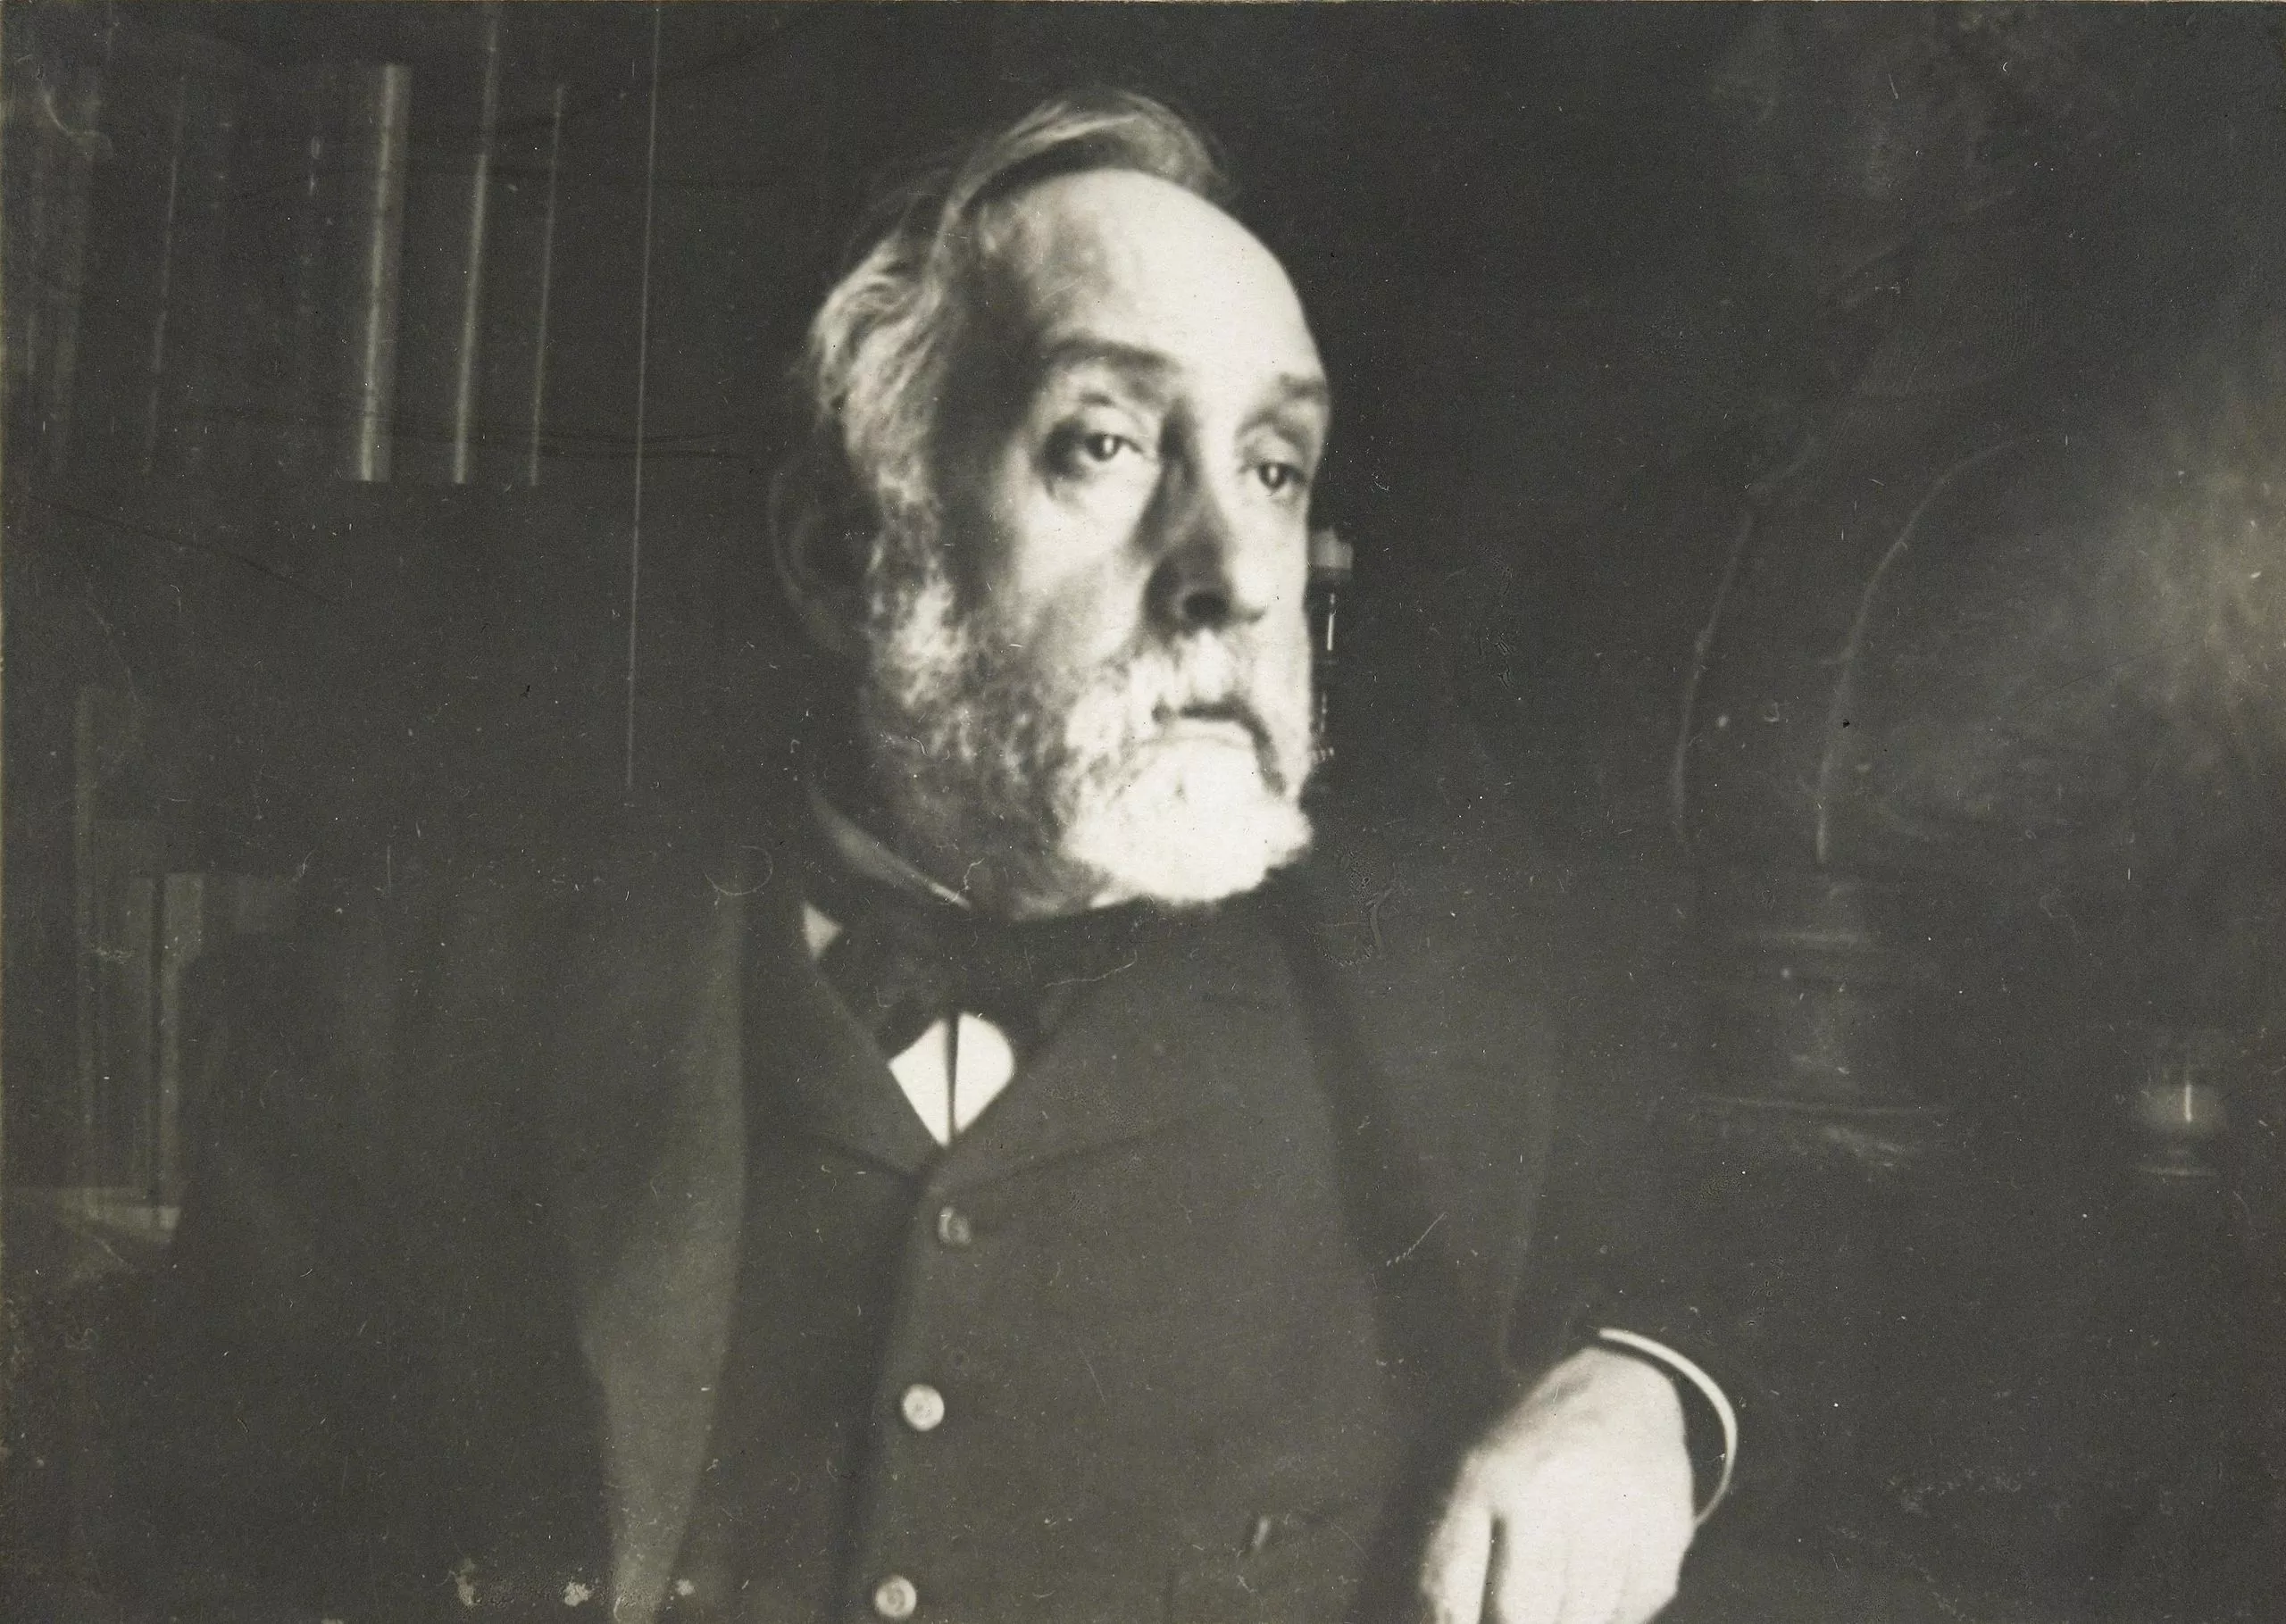 Autorretrat fotogràfic d'Edgar Degas (c. 1895)